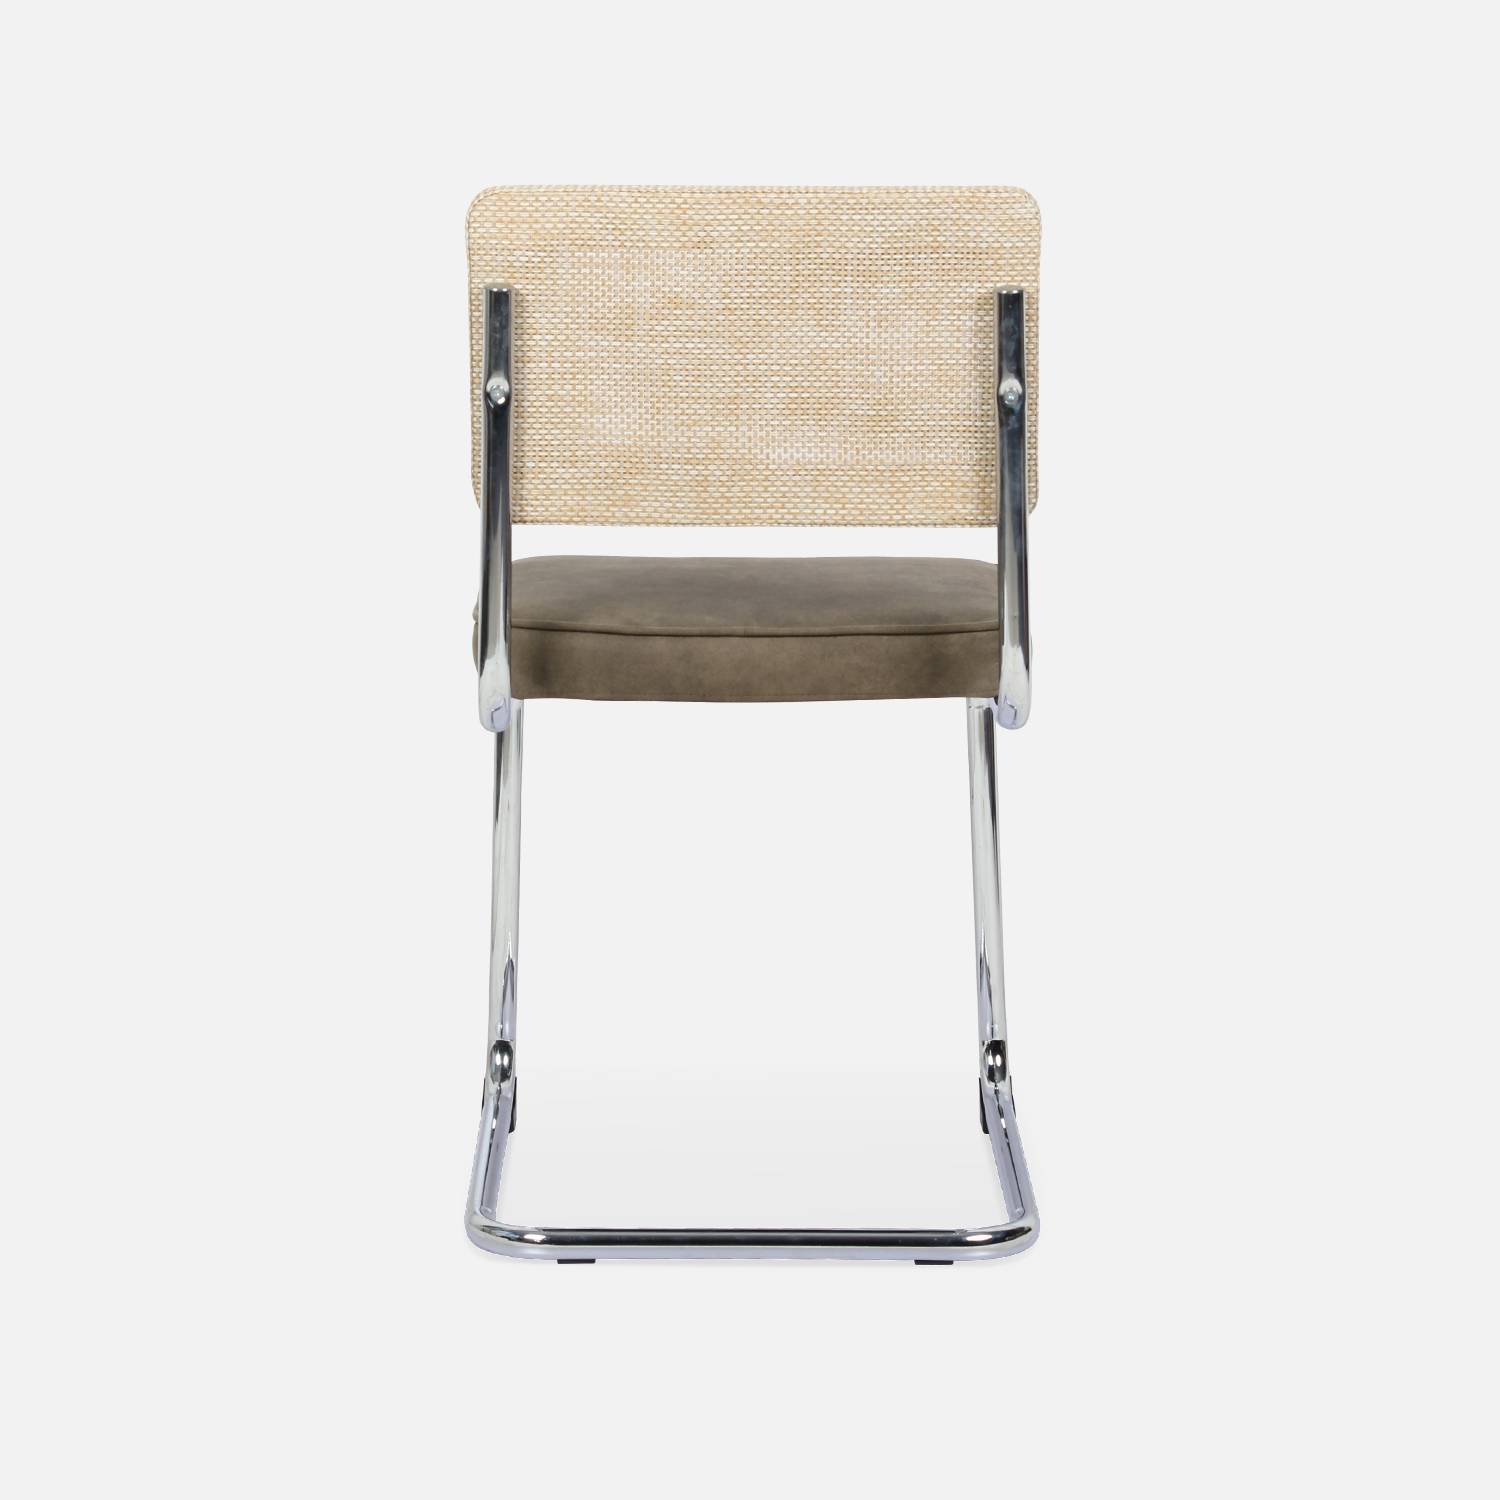 2 cadeiras cantilever - Maja - tecido caqui e resina com efeito rattan, 46 x 54,5 x 84,5 cm Photo7